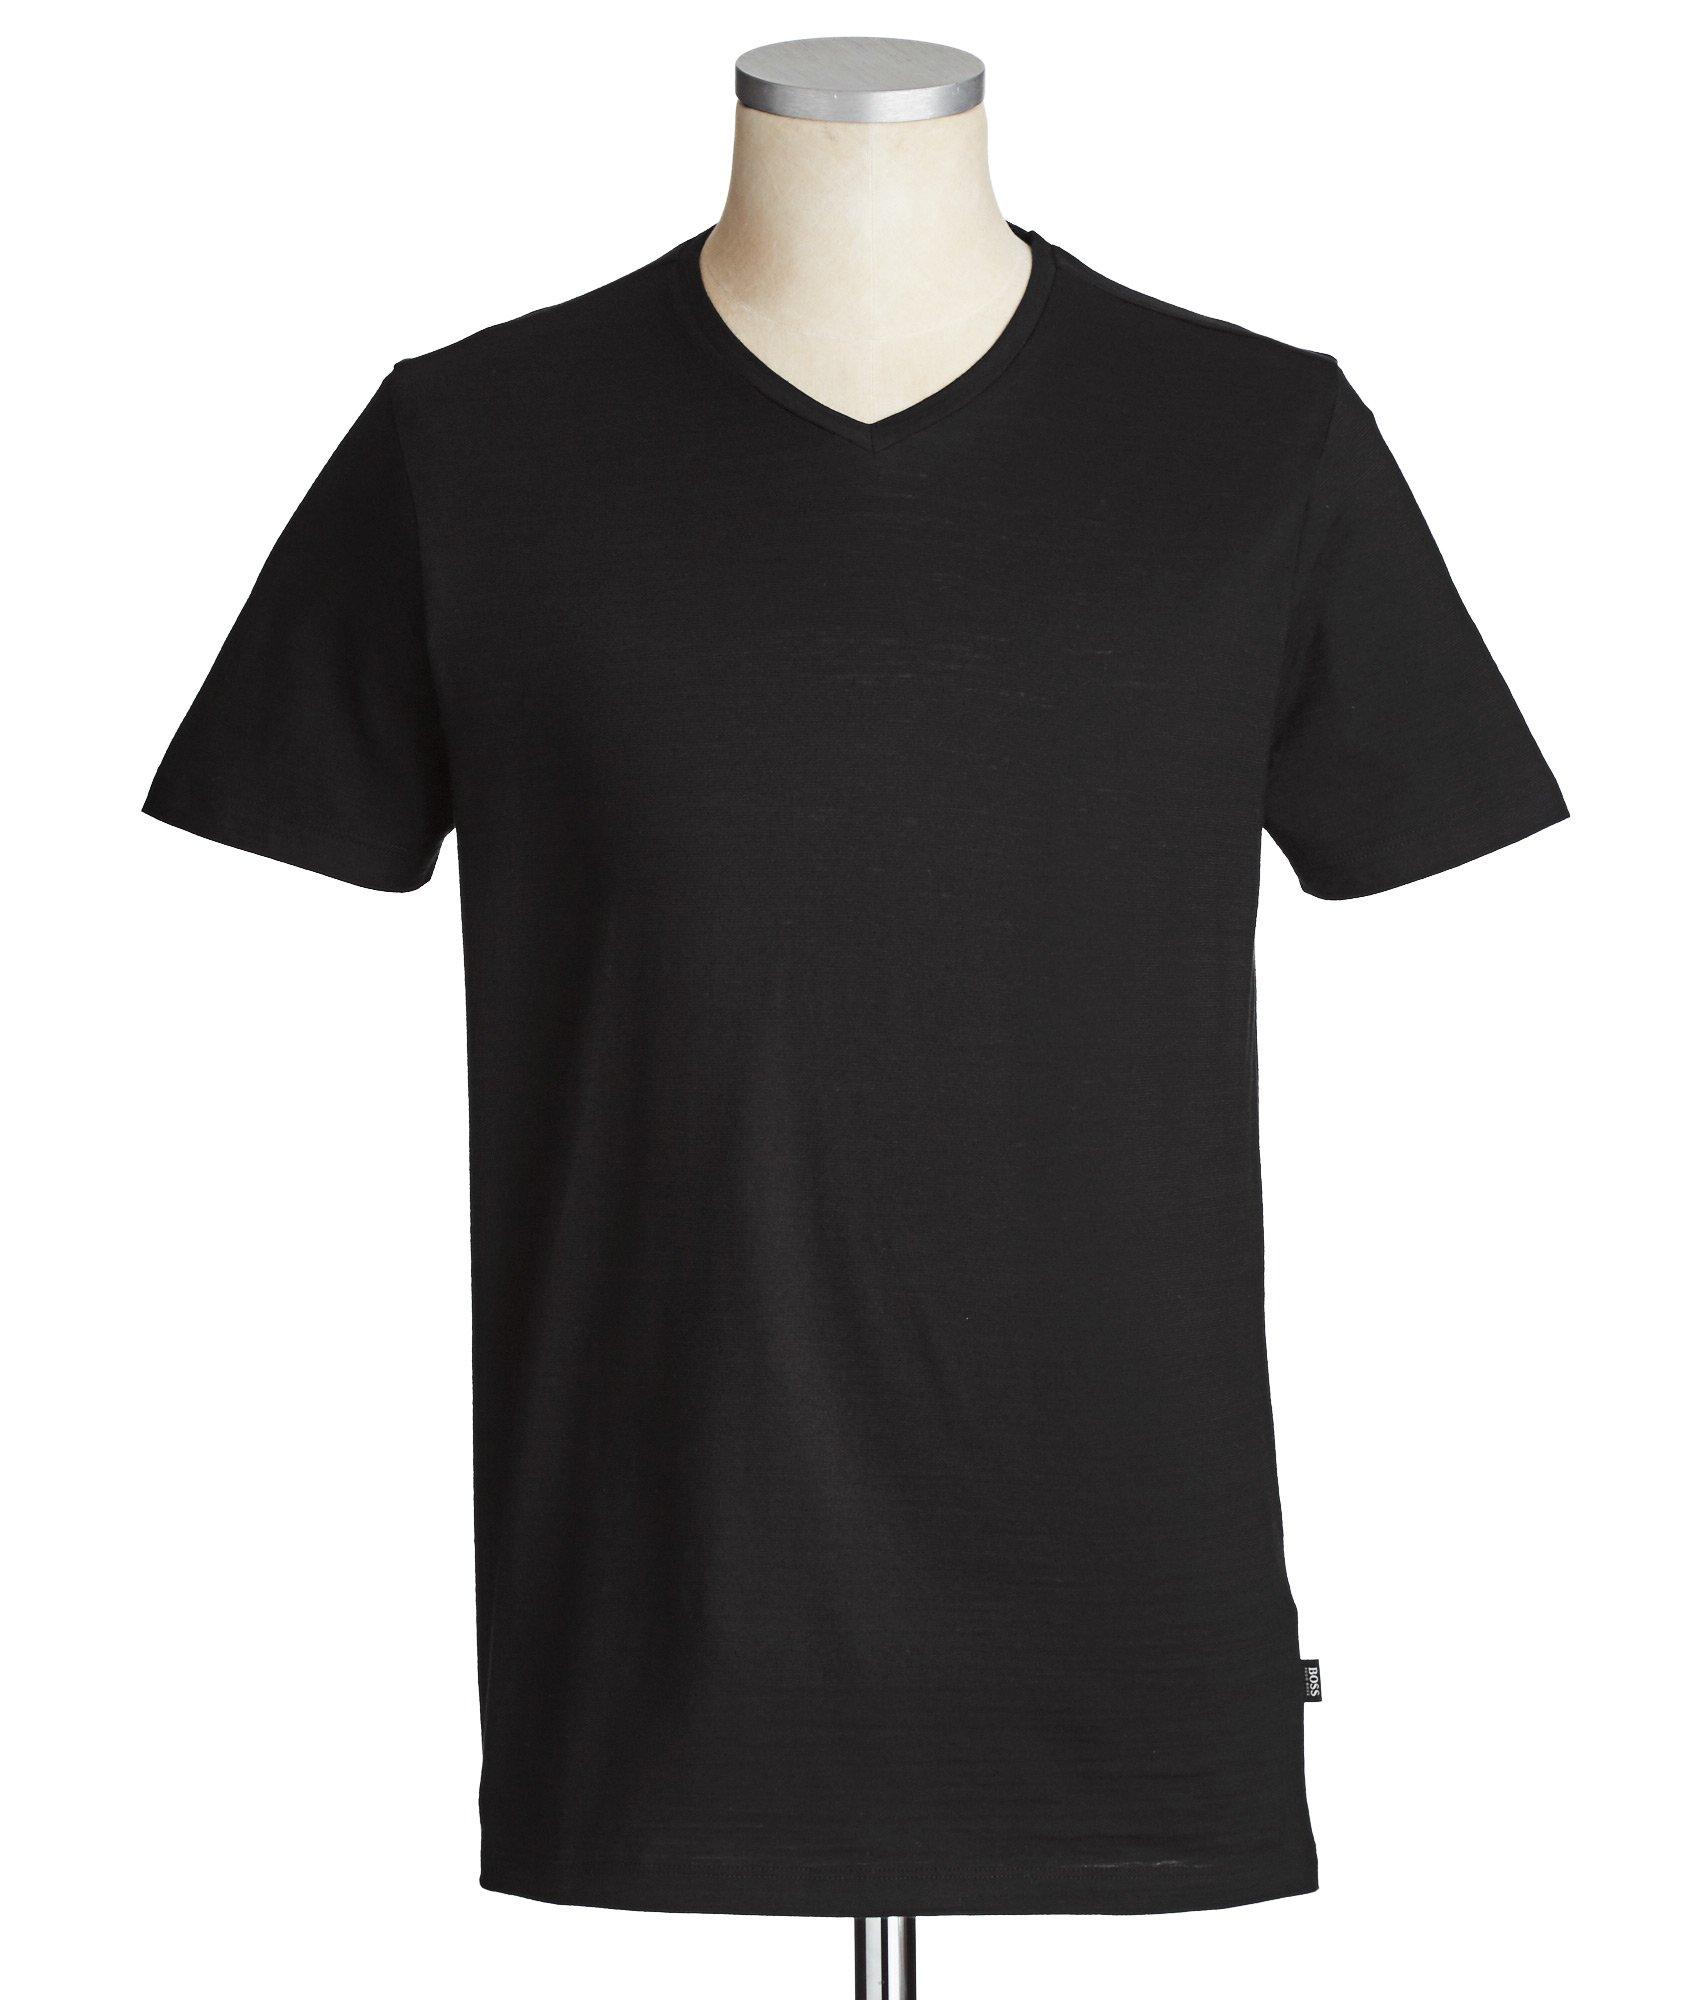 T-shirt en coton, modèle Tilson  image 0